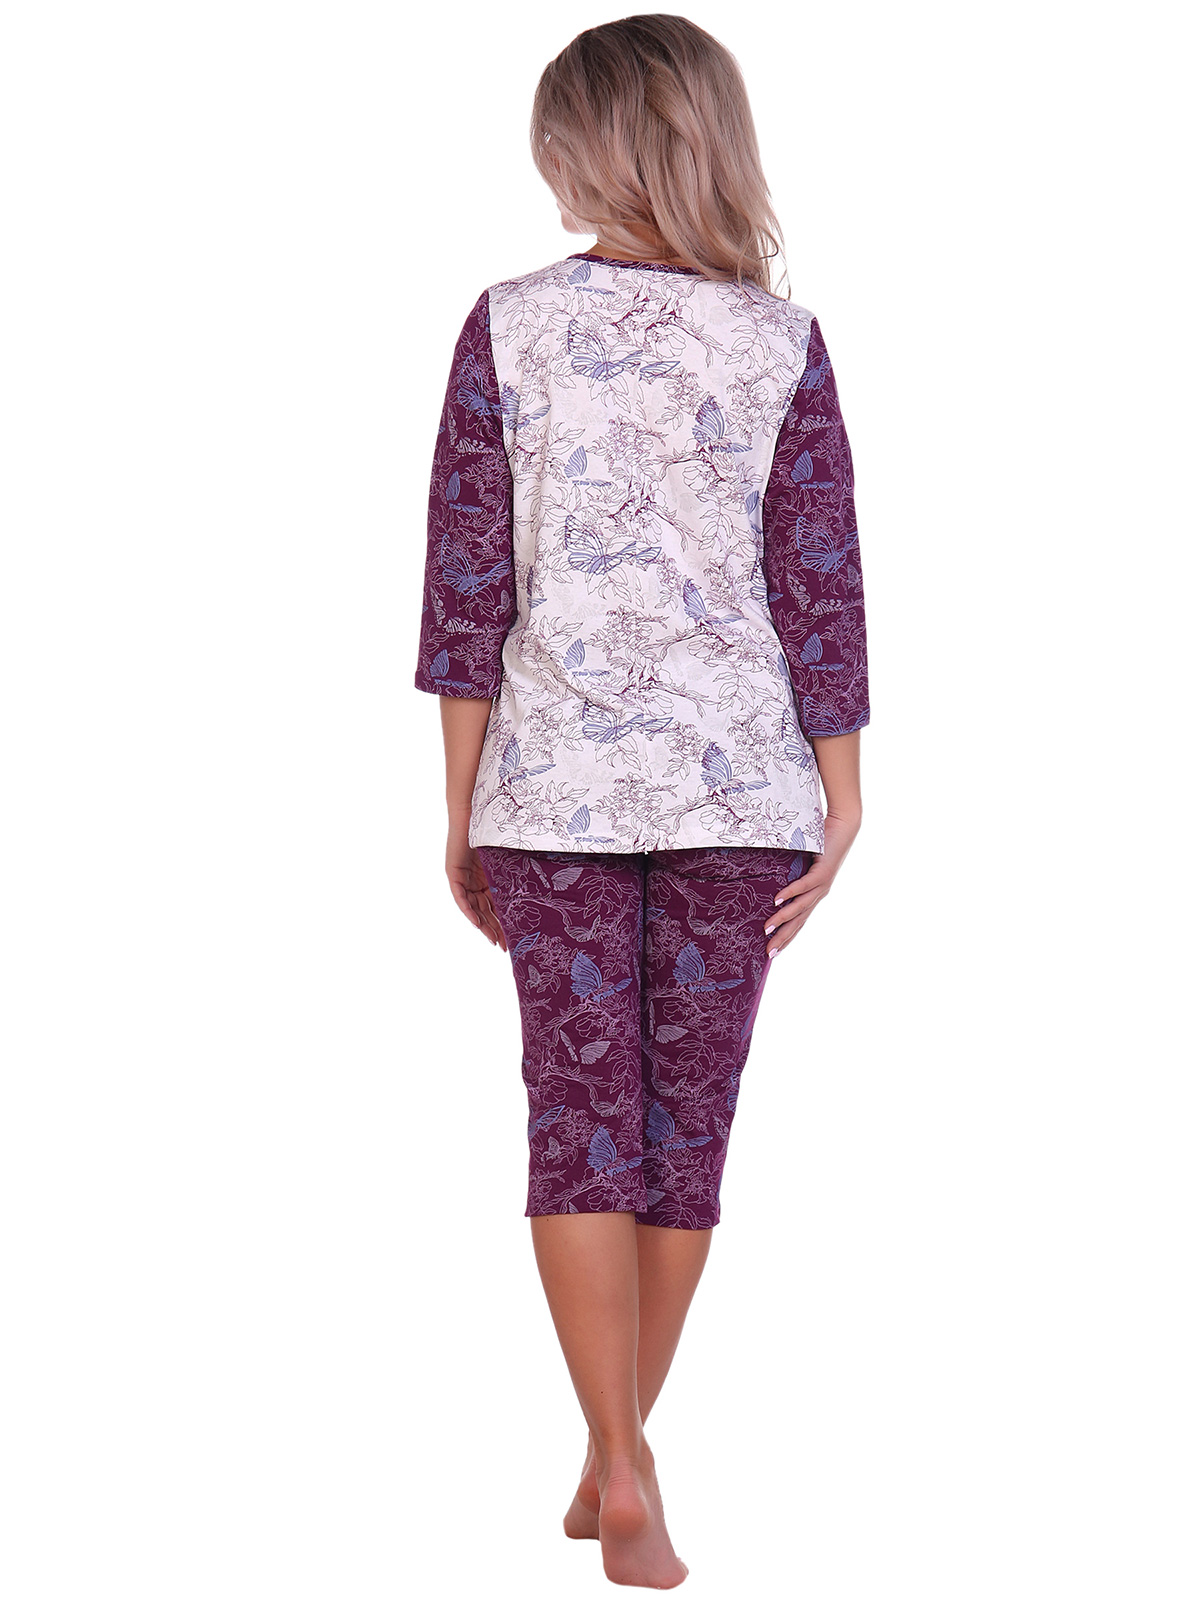 Жен. пижама арт. 16-0705 Бордовый р. 56 НСД Трикотаж, размер 56 - фото 4